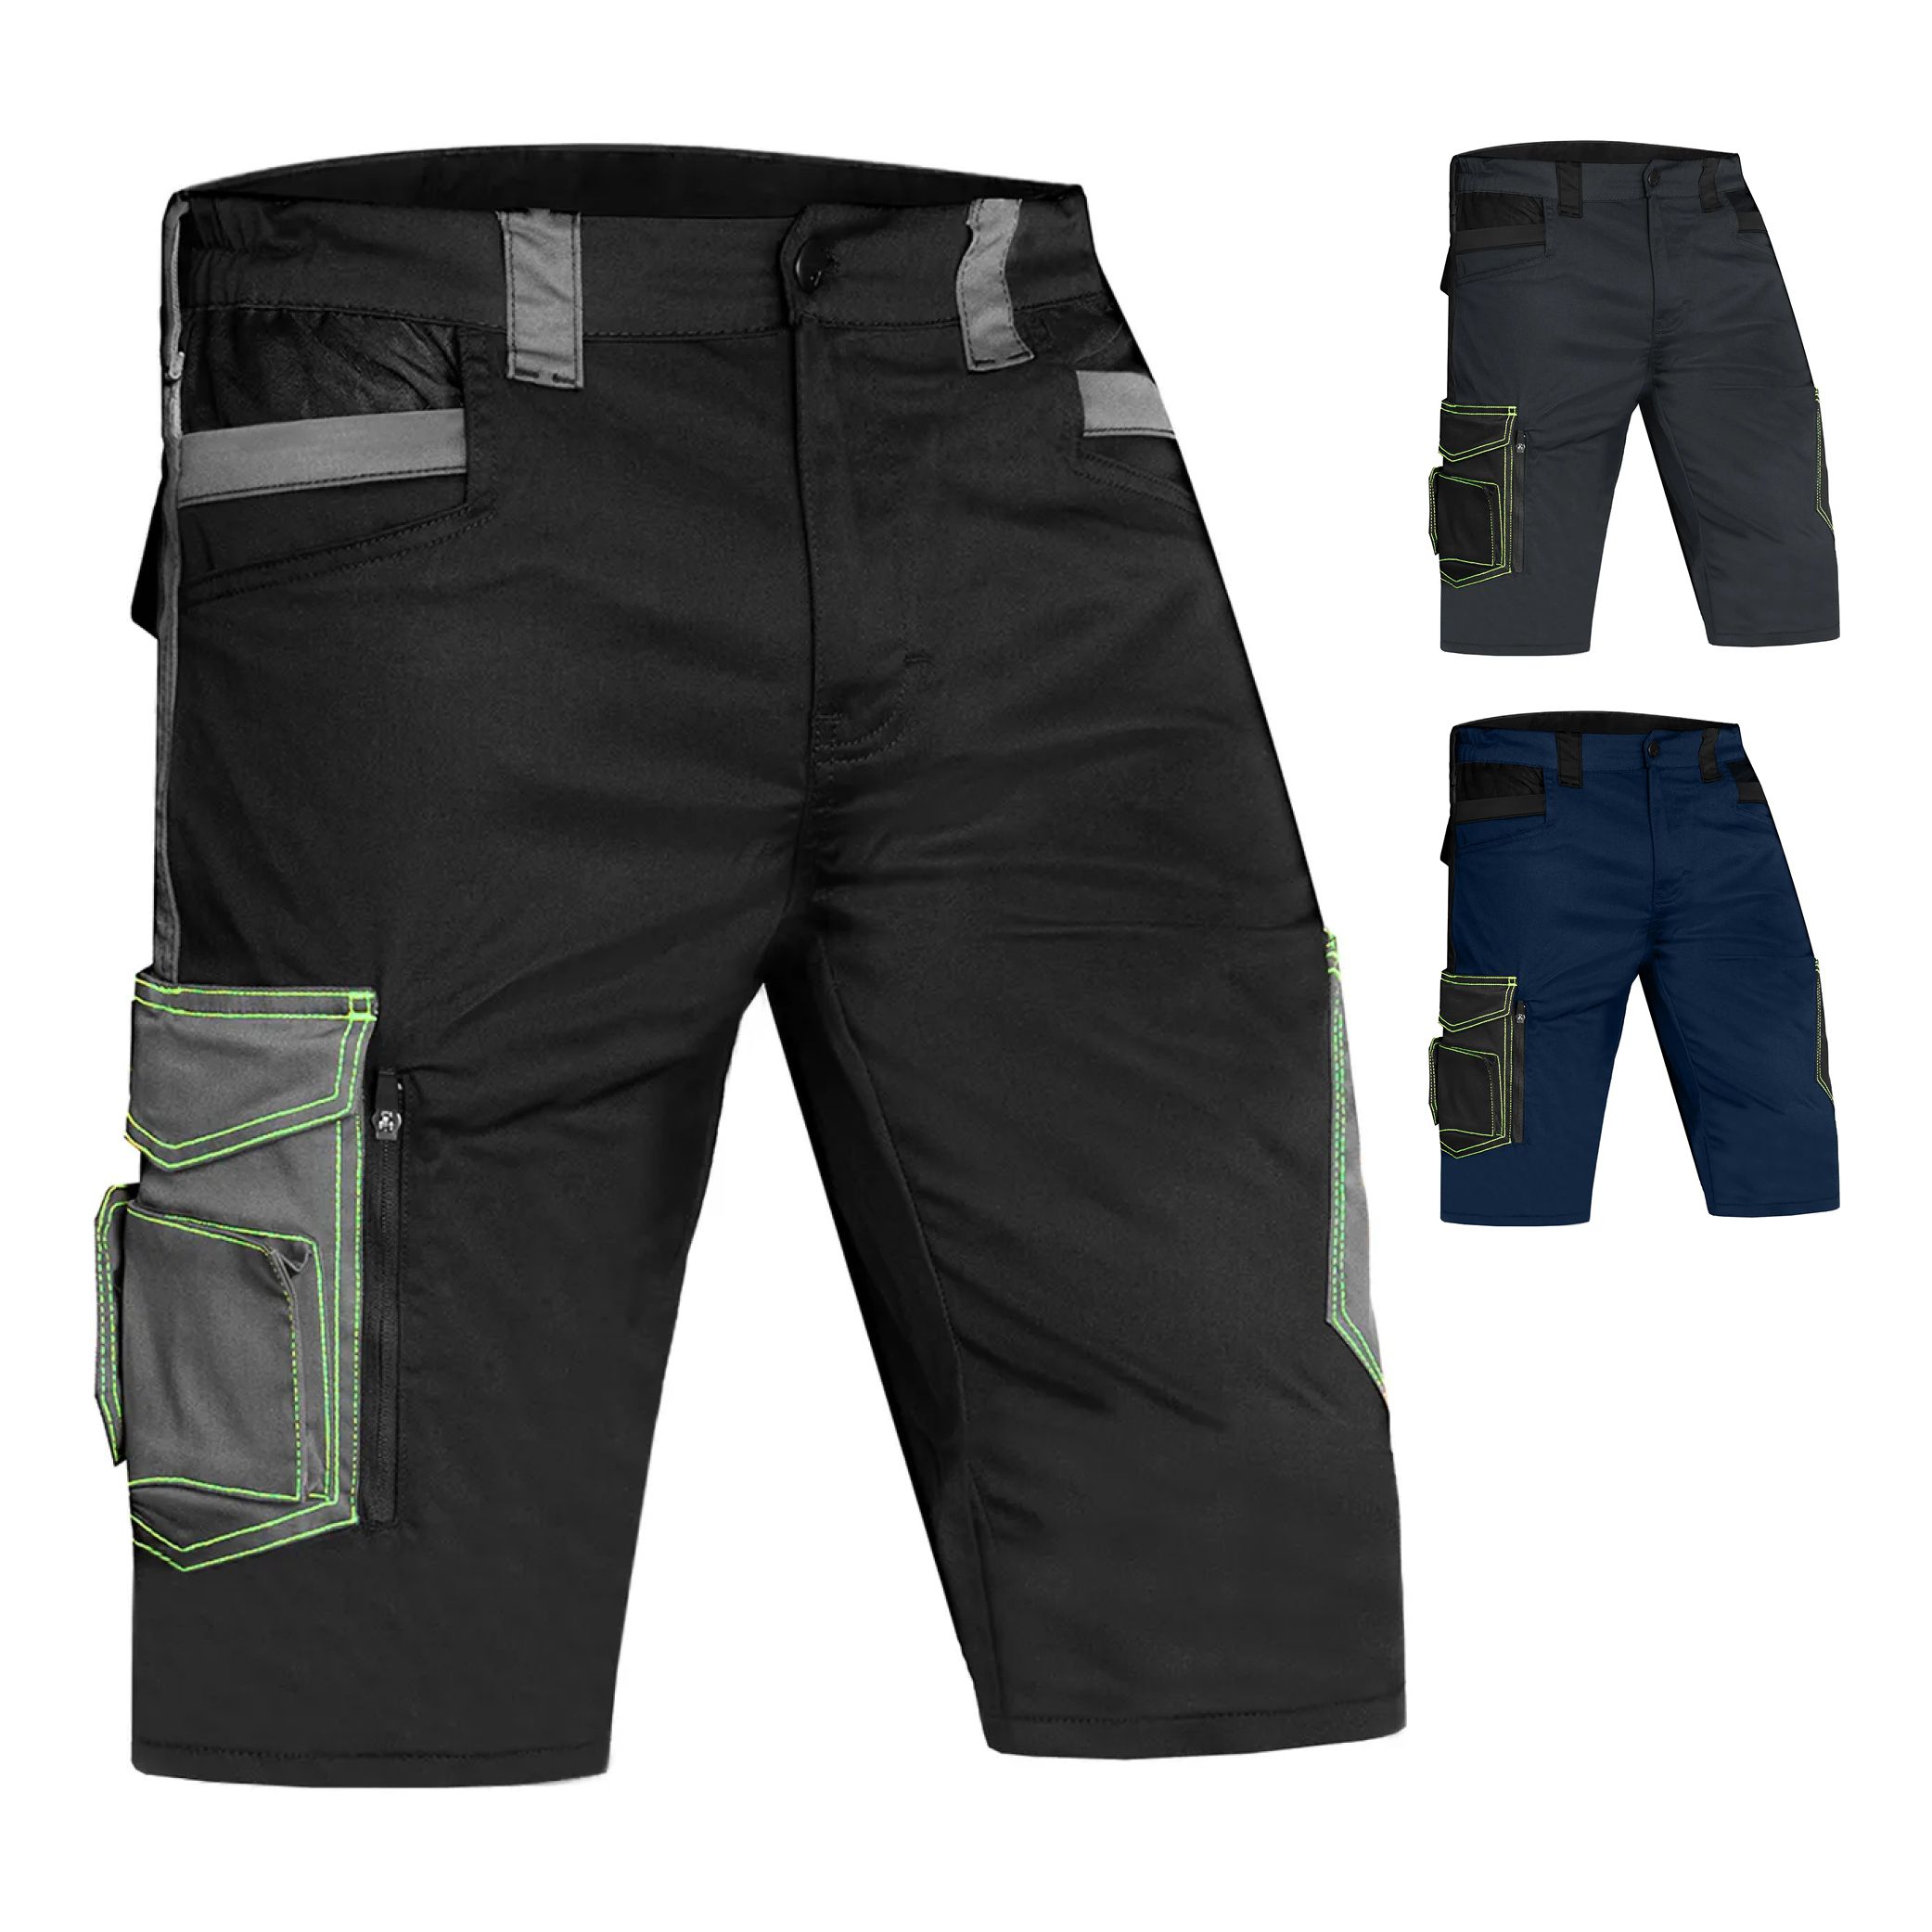 ACE Genesis Herren-Arbeits-Hose kurz - Männer-Cargo-Hosen für die Arbeit - Shorts mit Stretch-Bund